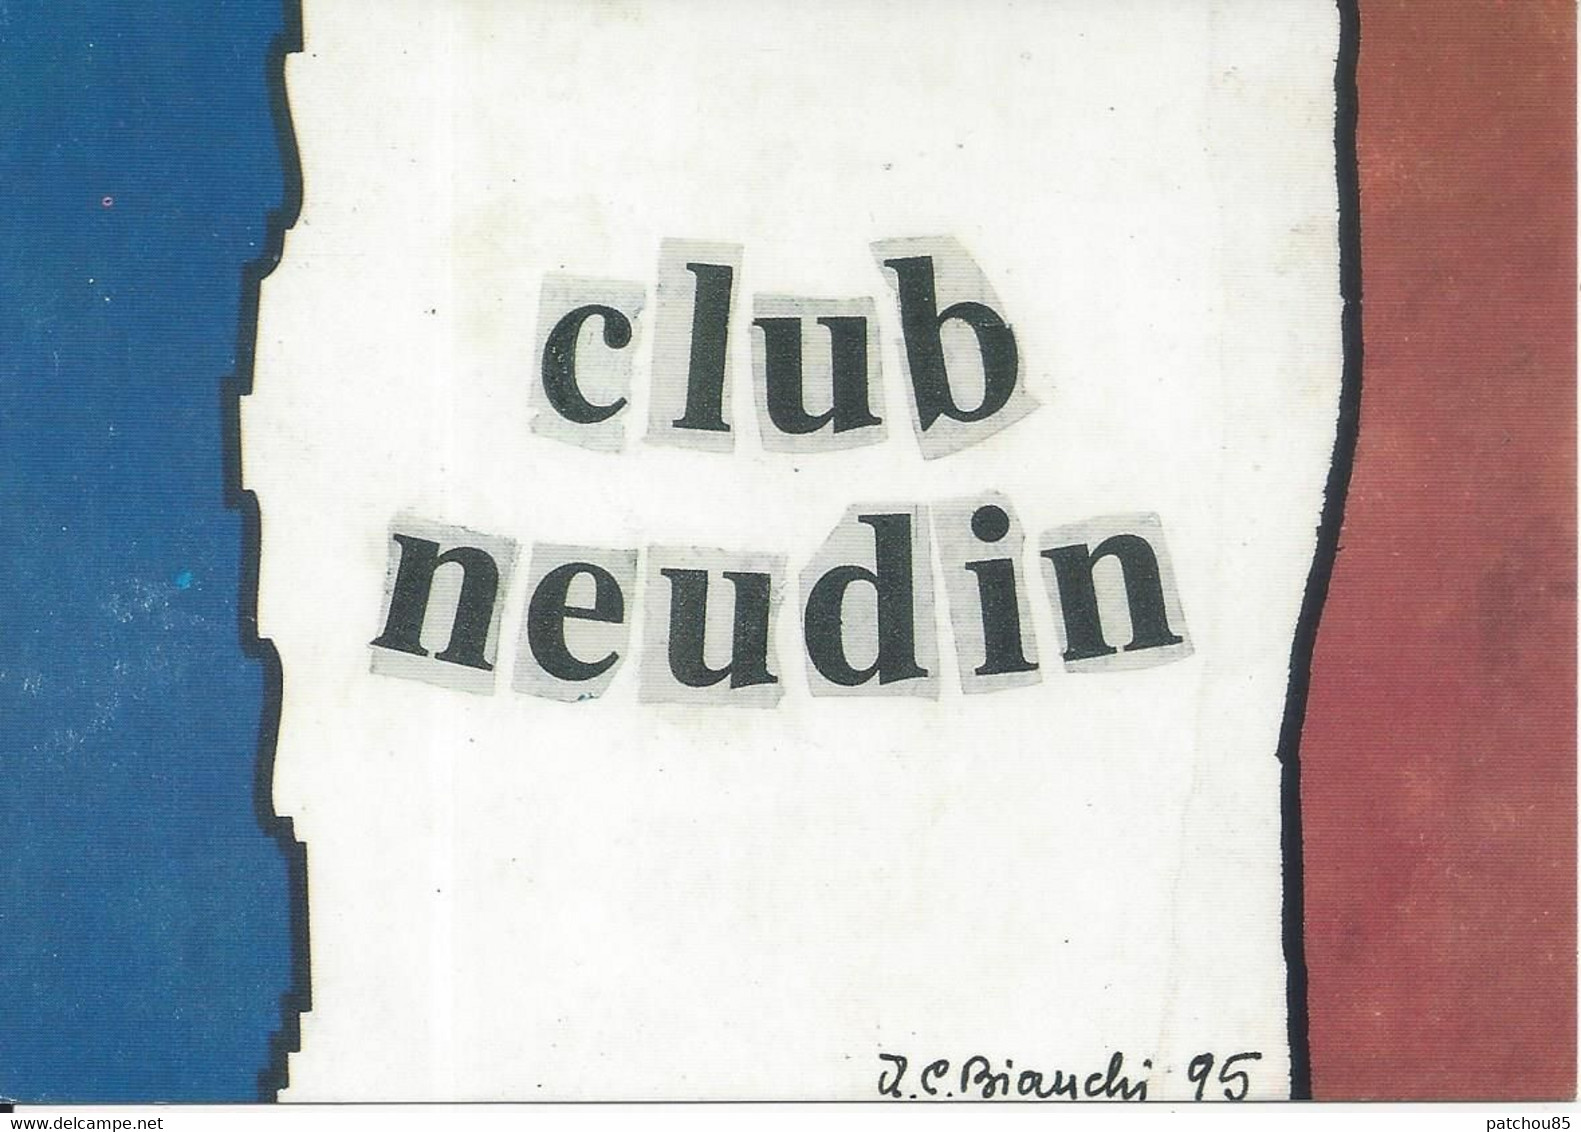 CPM Club Neudin Illustrateur Annibale C. Bianchi D’Asti  Composition Patriotique - Bourses & Salons De Collections